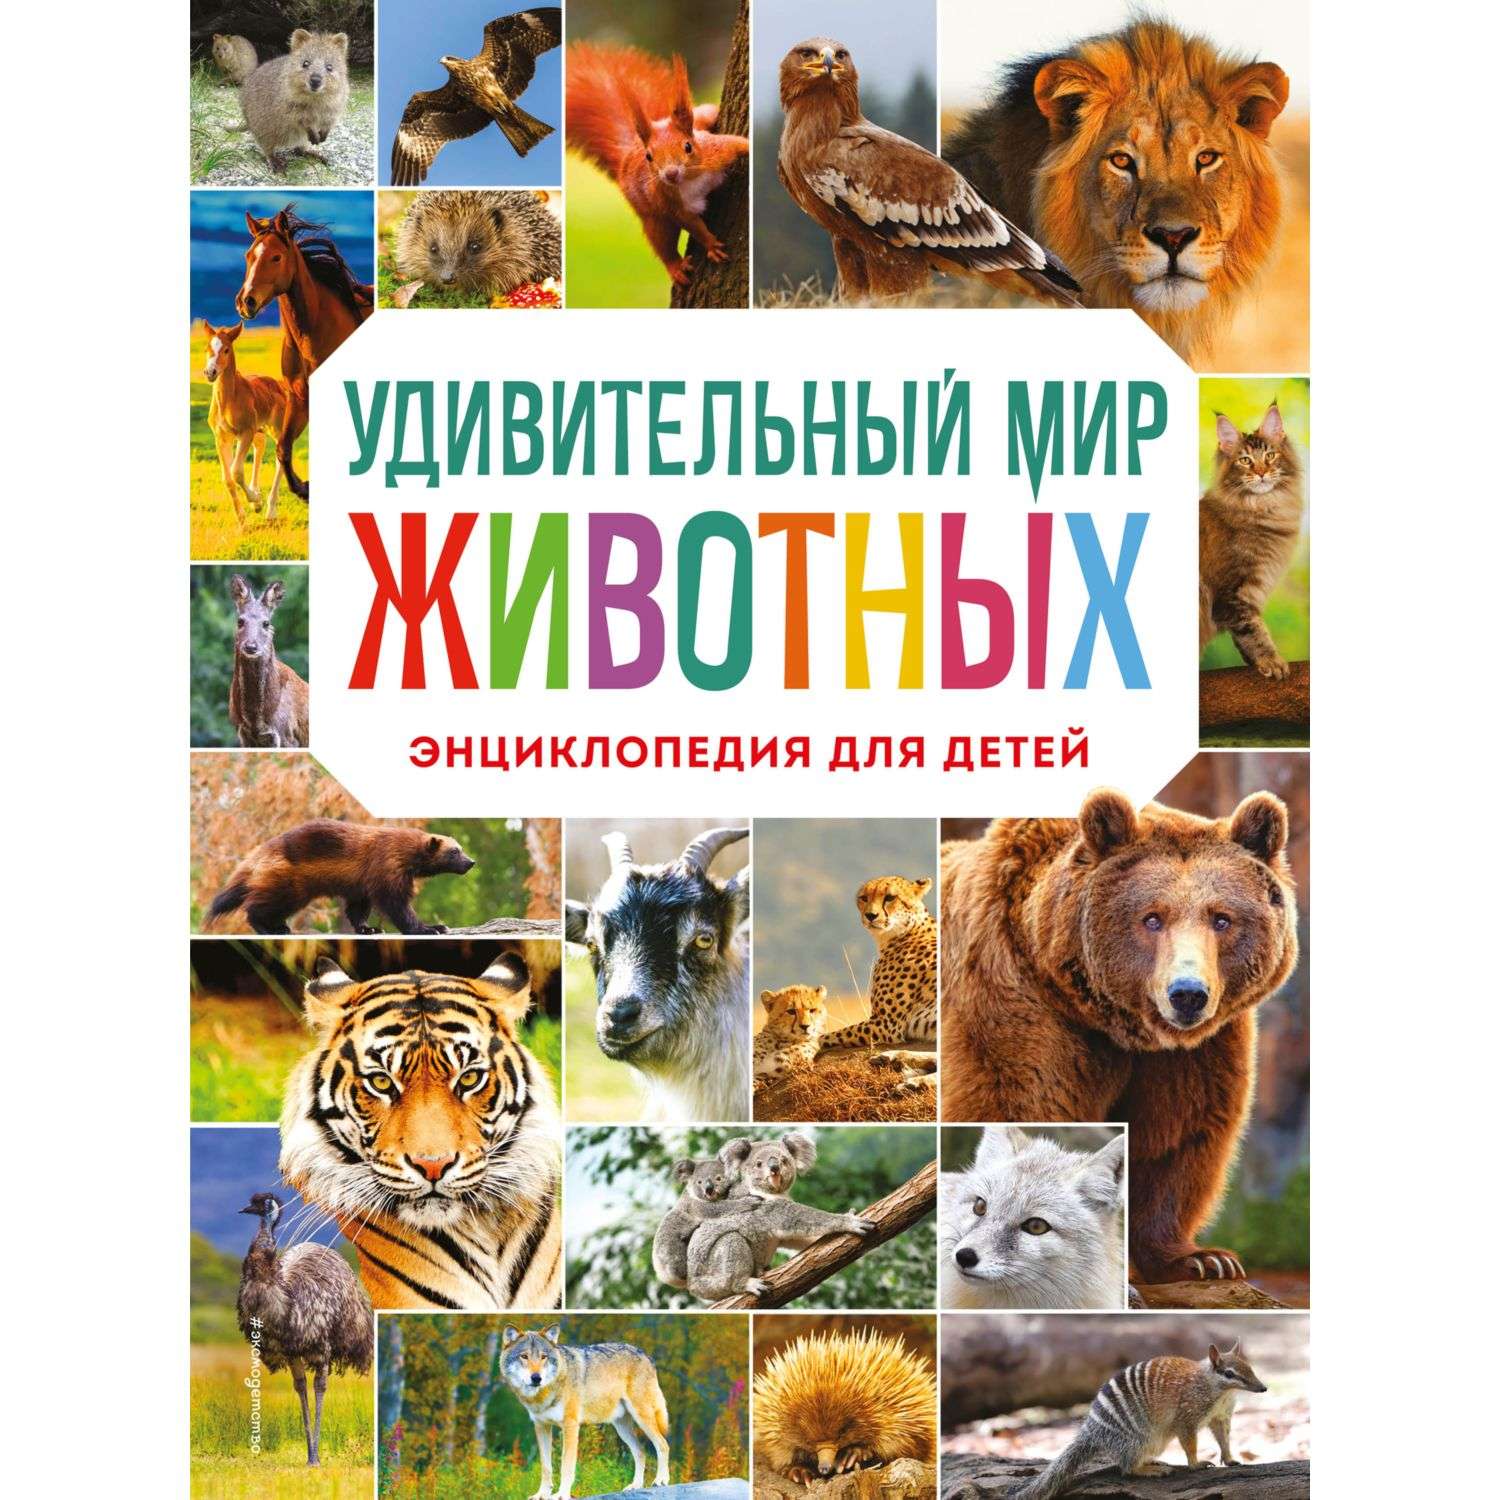 Евгений Чарушин “Рассказы о животных”